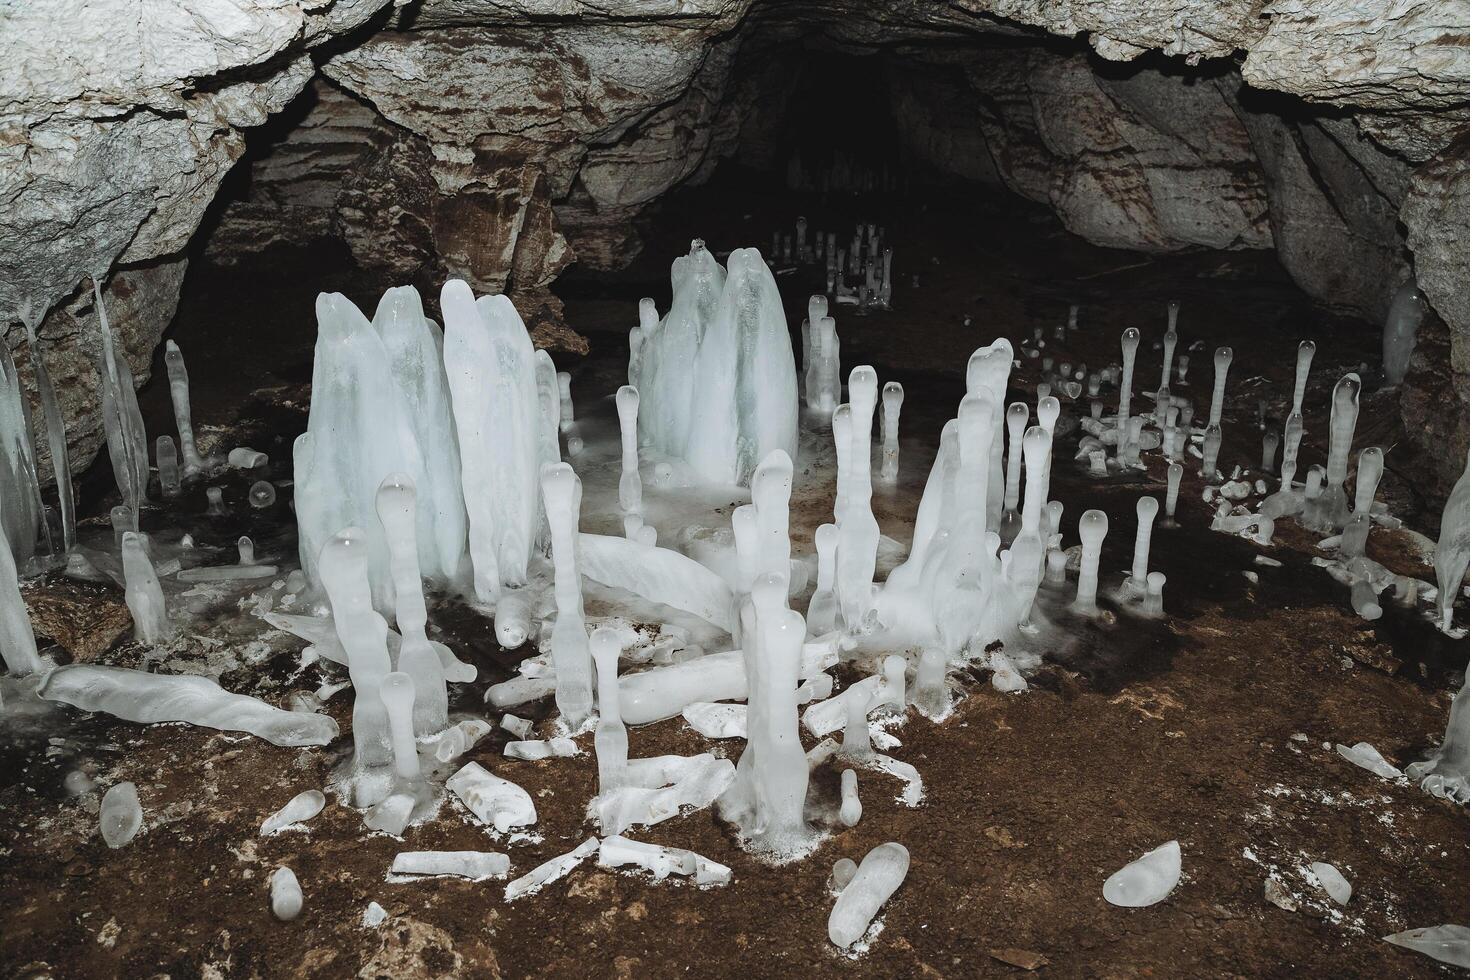 das Höhle im Winter wachsen Eiszapfen, Eis Blöcke auf das Boden, ein Karst Höhle, das Studie von unter Tage Tunnel, Speläologie. foto